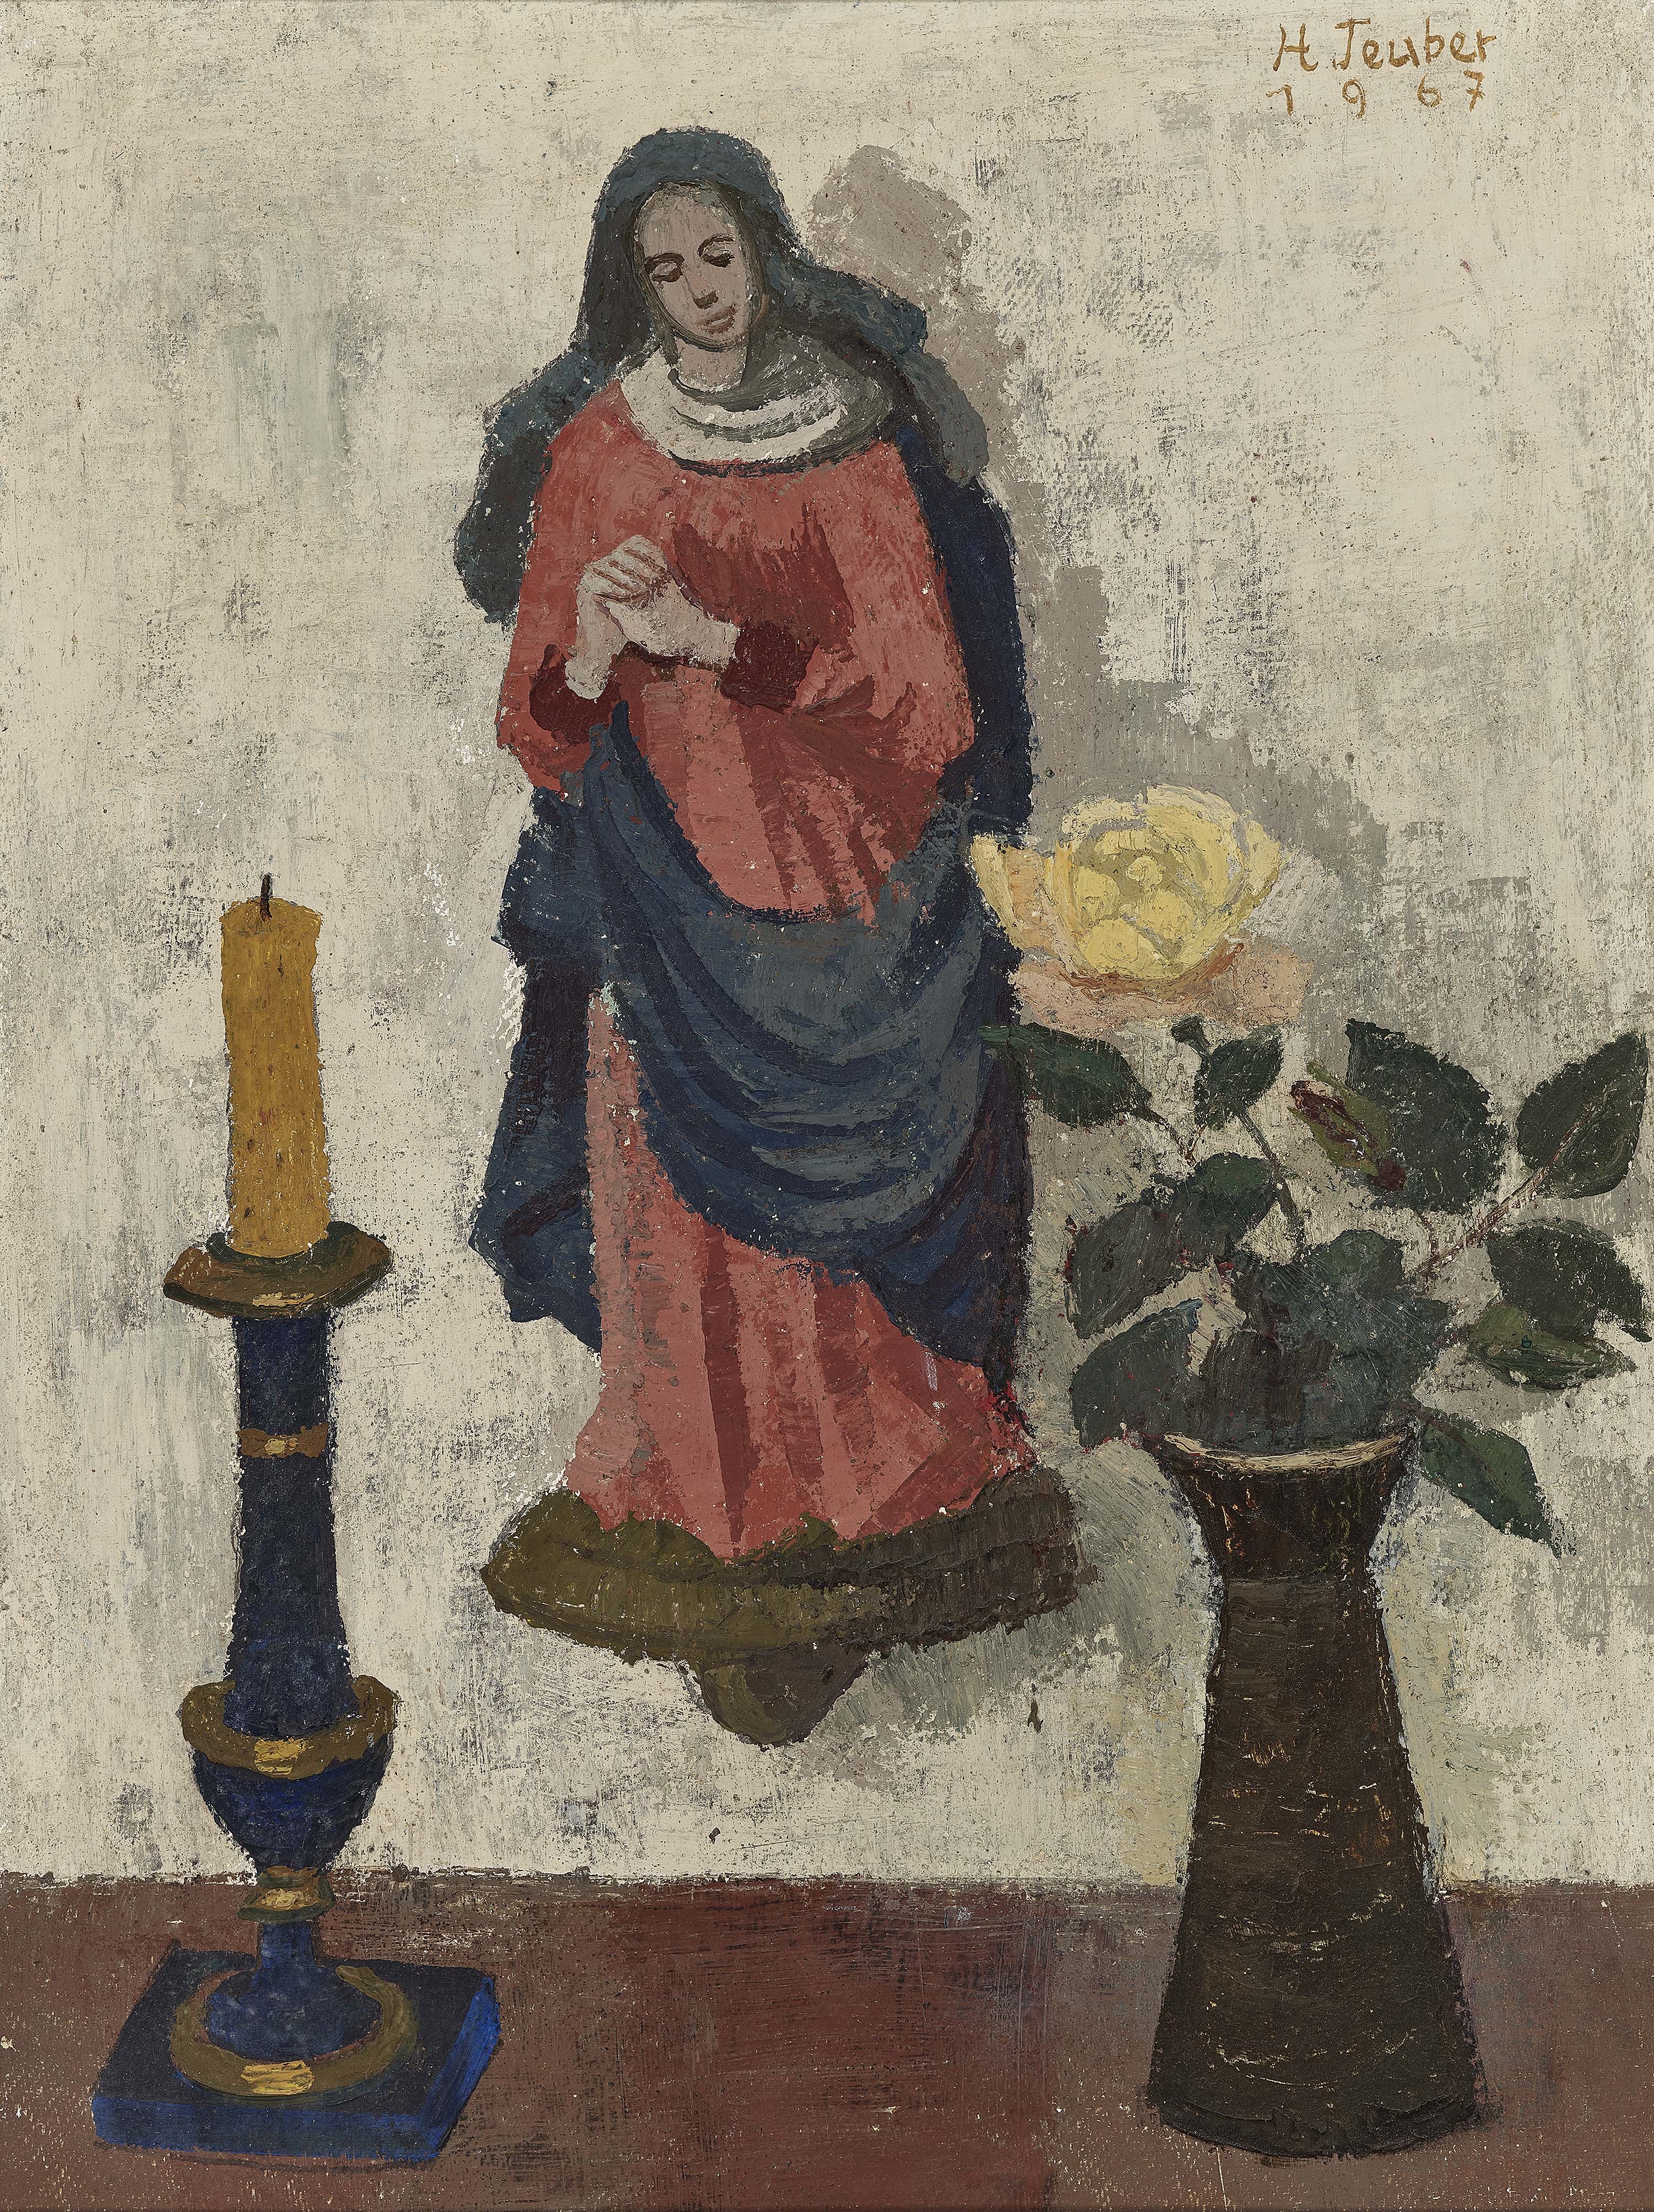 Stilleben mit fränkischer Madonna. by Hermann Teuber, 1894